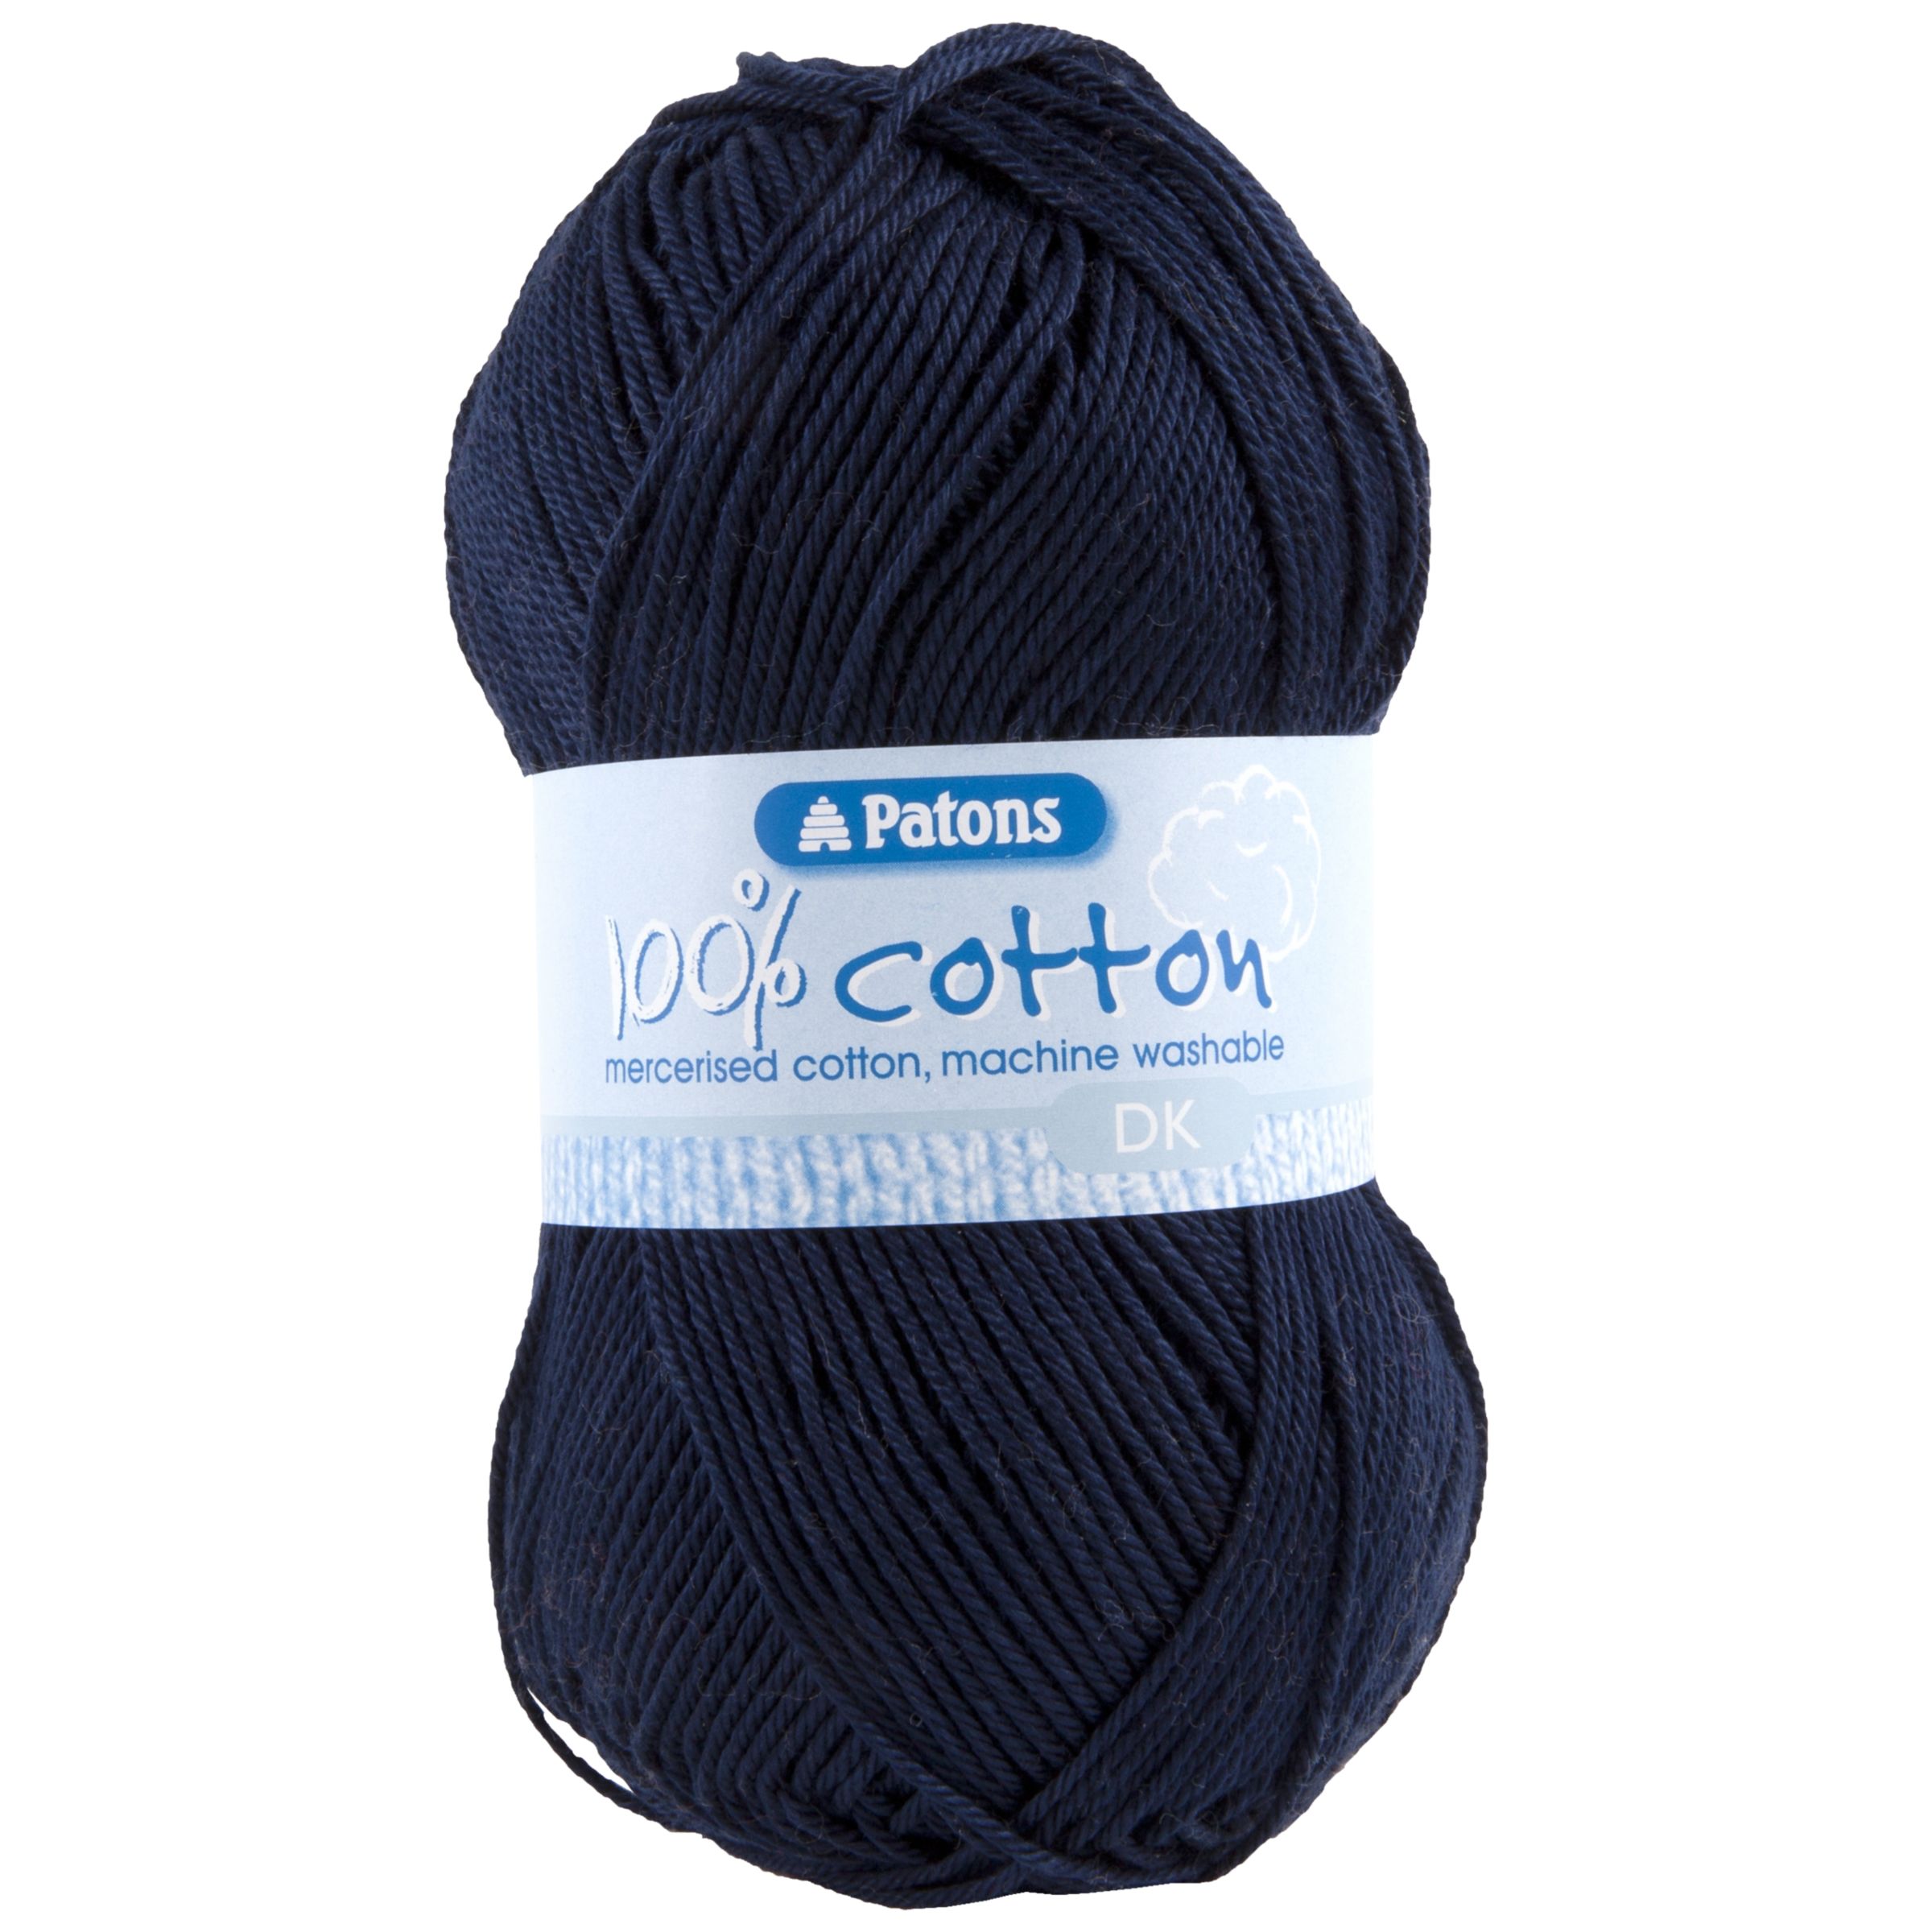 Patons 100% Cotton DK Yarn, 100g at John Lewis